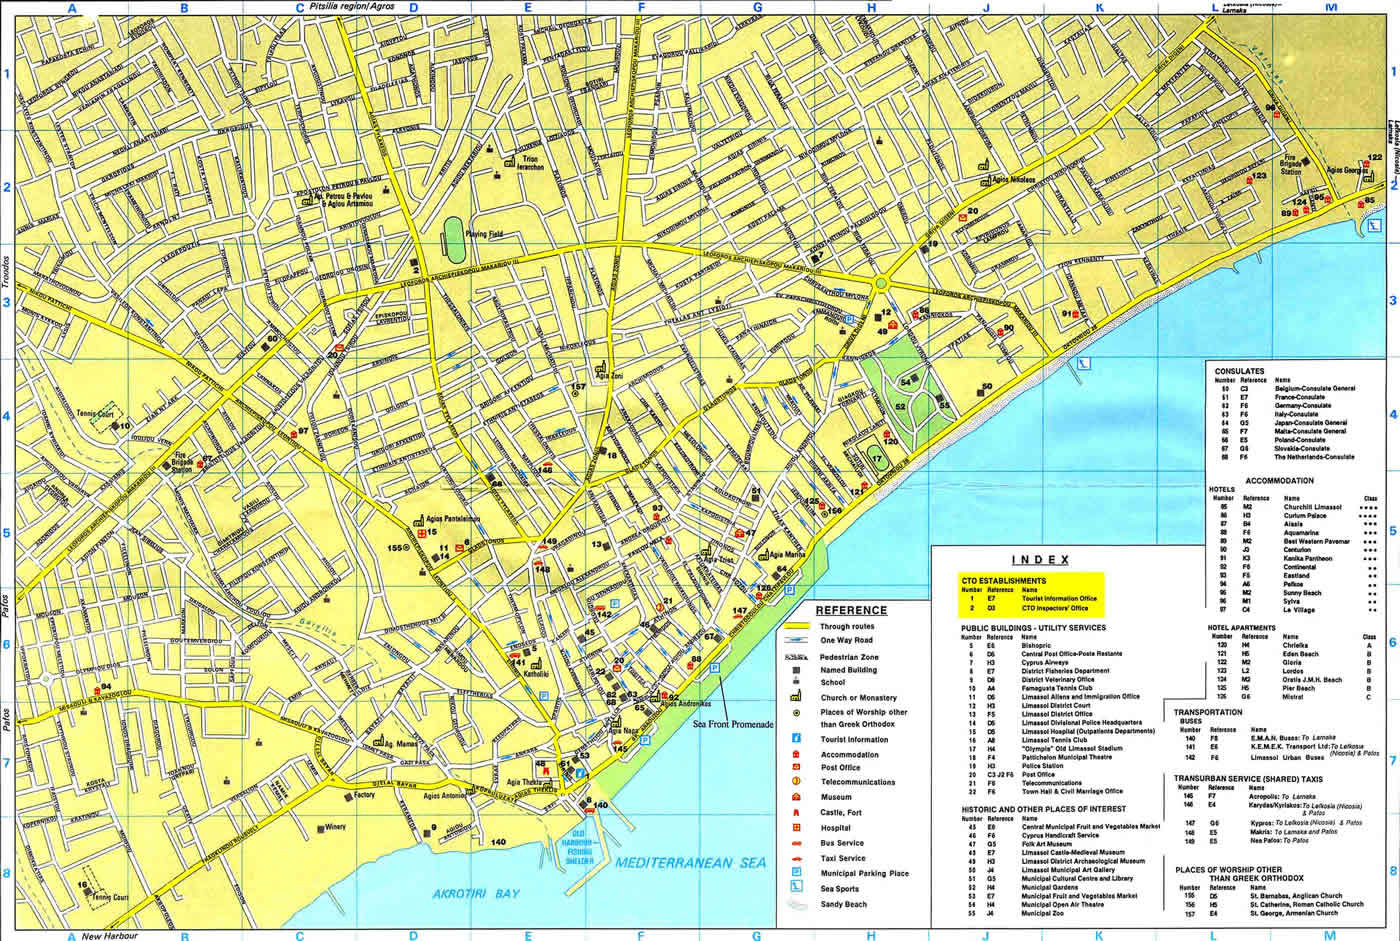 Limassol map